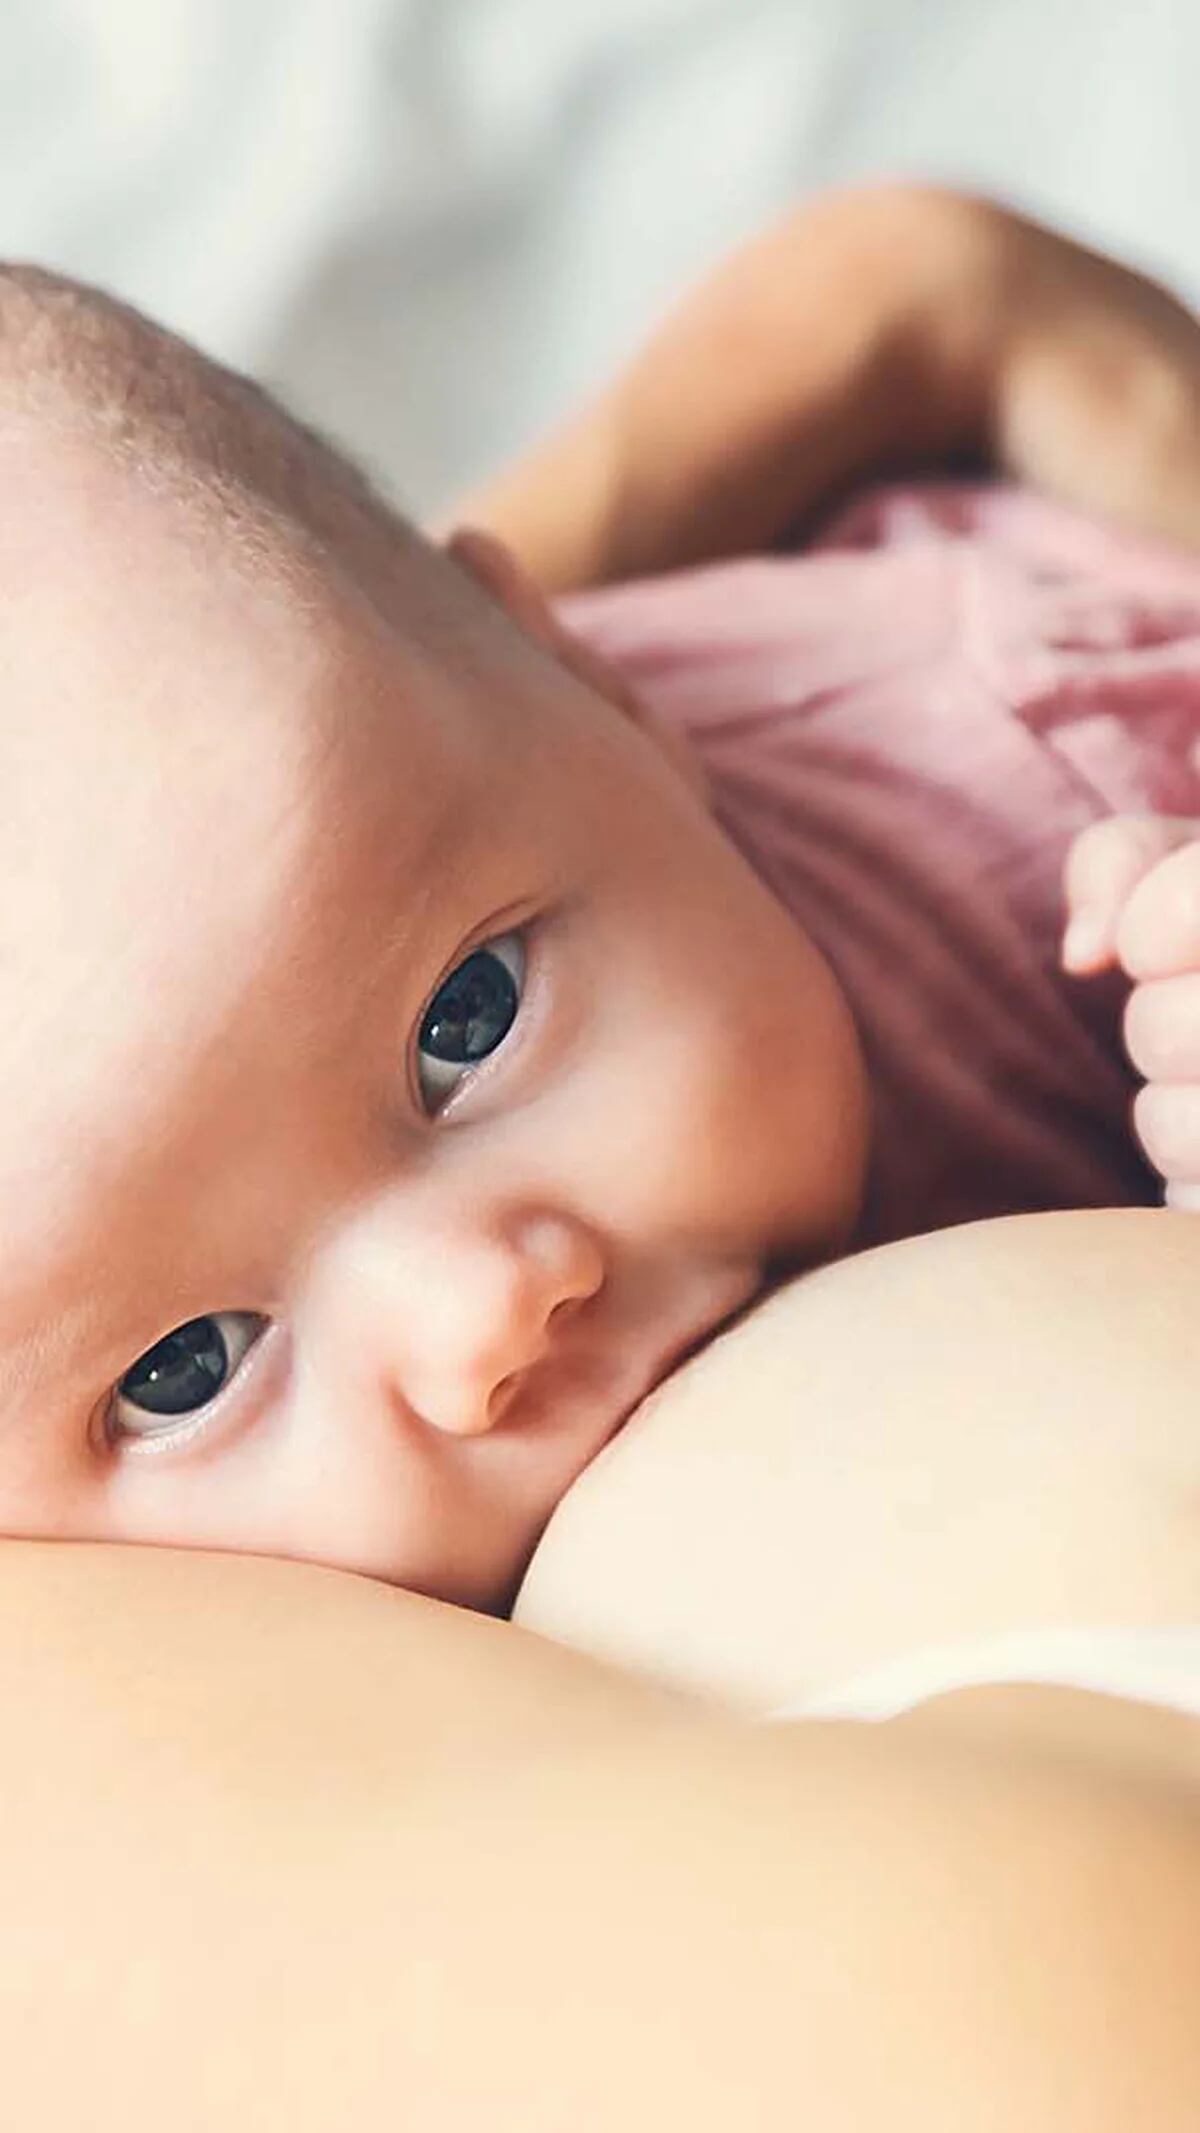 Mitos y verdades sobre el primer baño del bebé recién nacido - Infobae